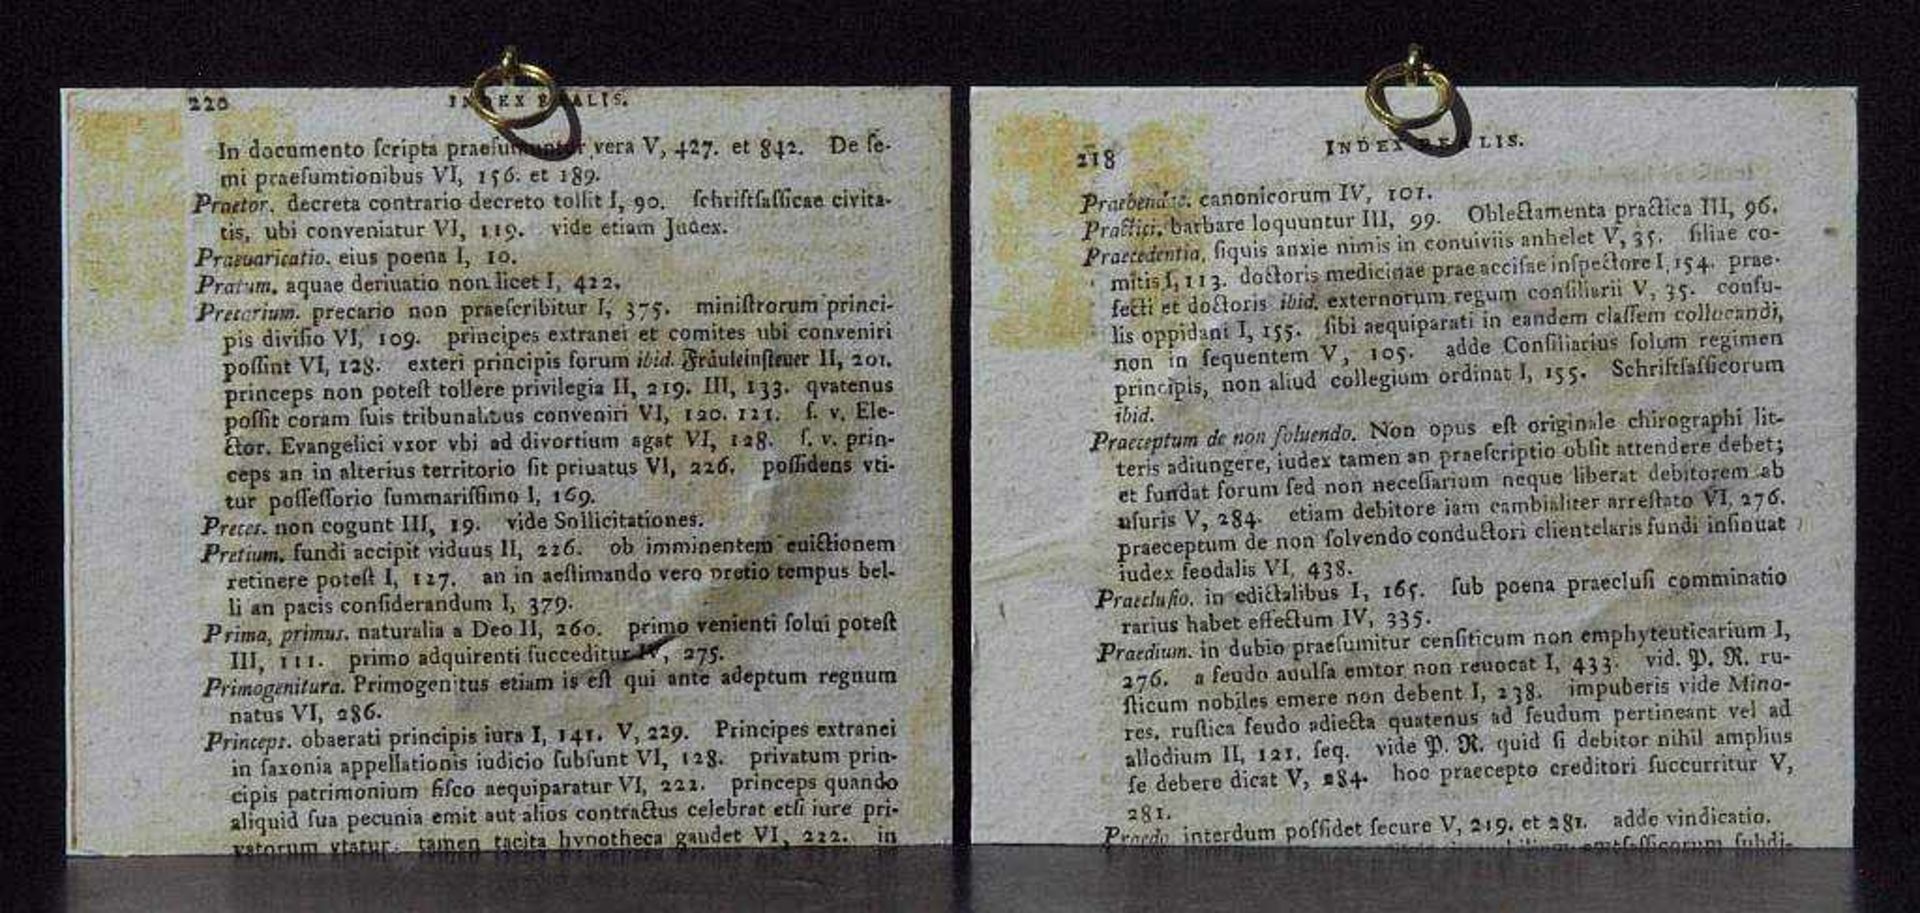 Zwei Elfenbeinminiaturen nach Spitzweg: "Der Pirschgang". "Der Alchimist". Zwei Elfenbeinminiaturen. - Image 3 of 3